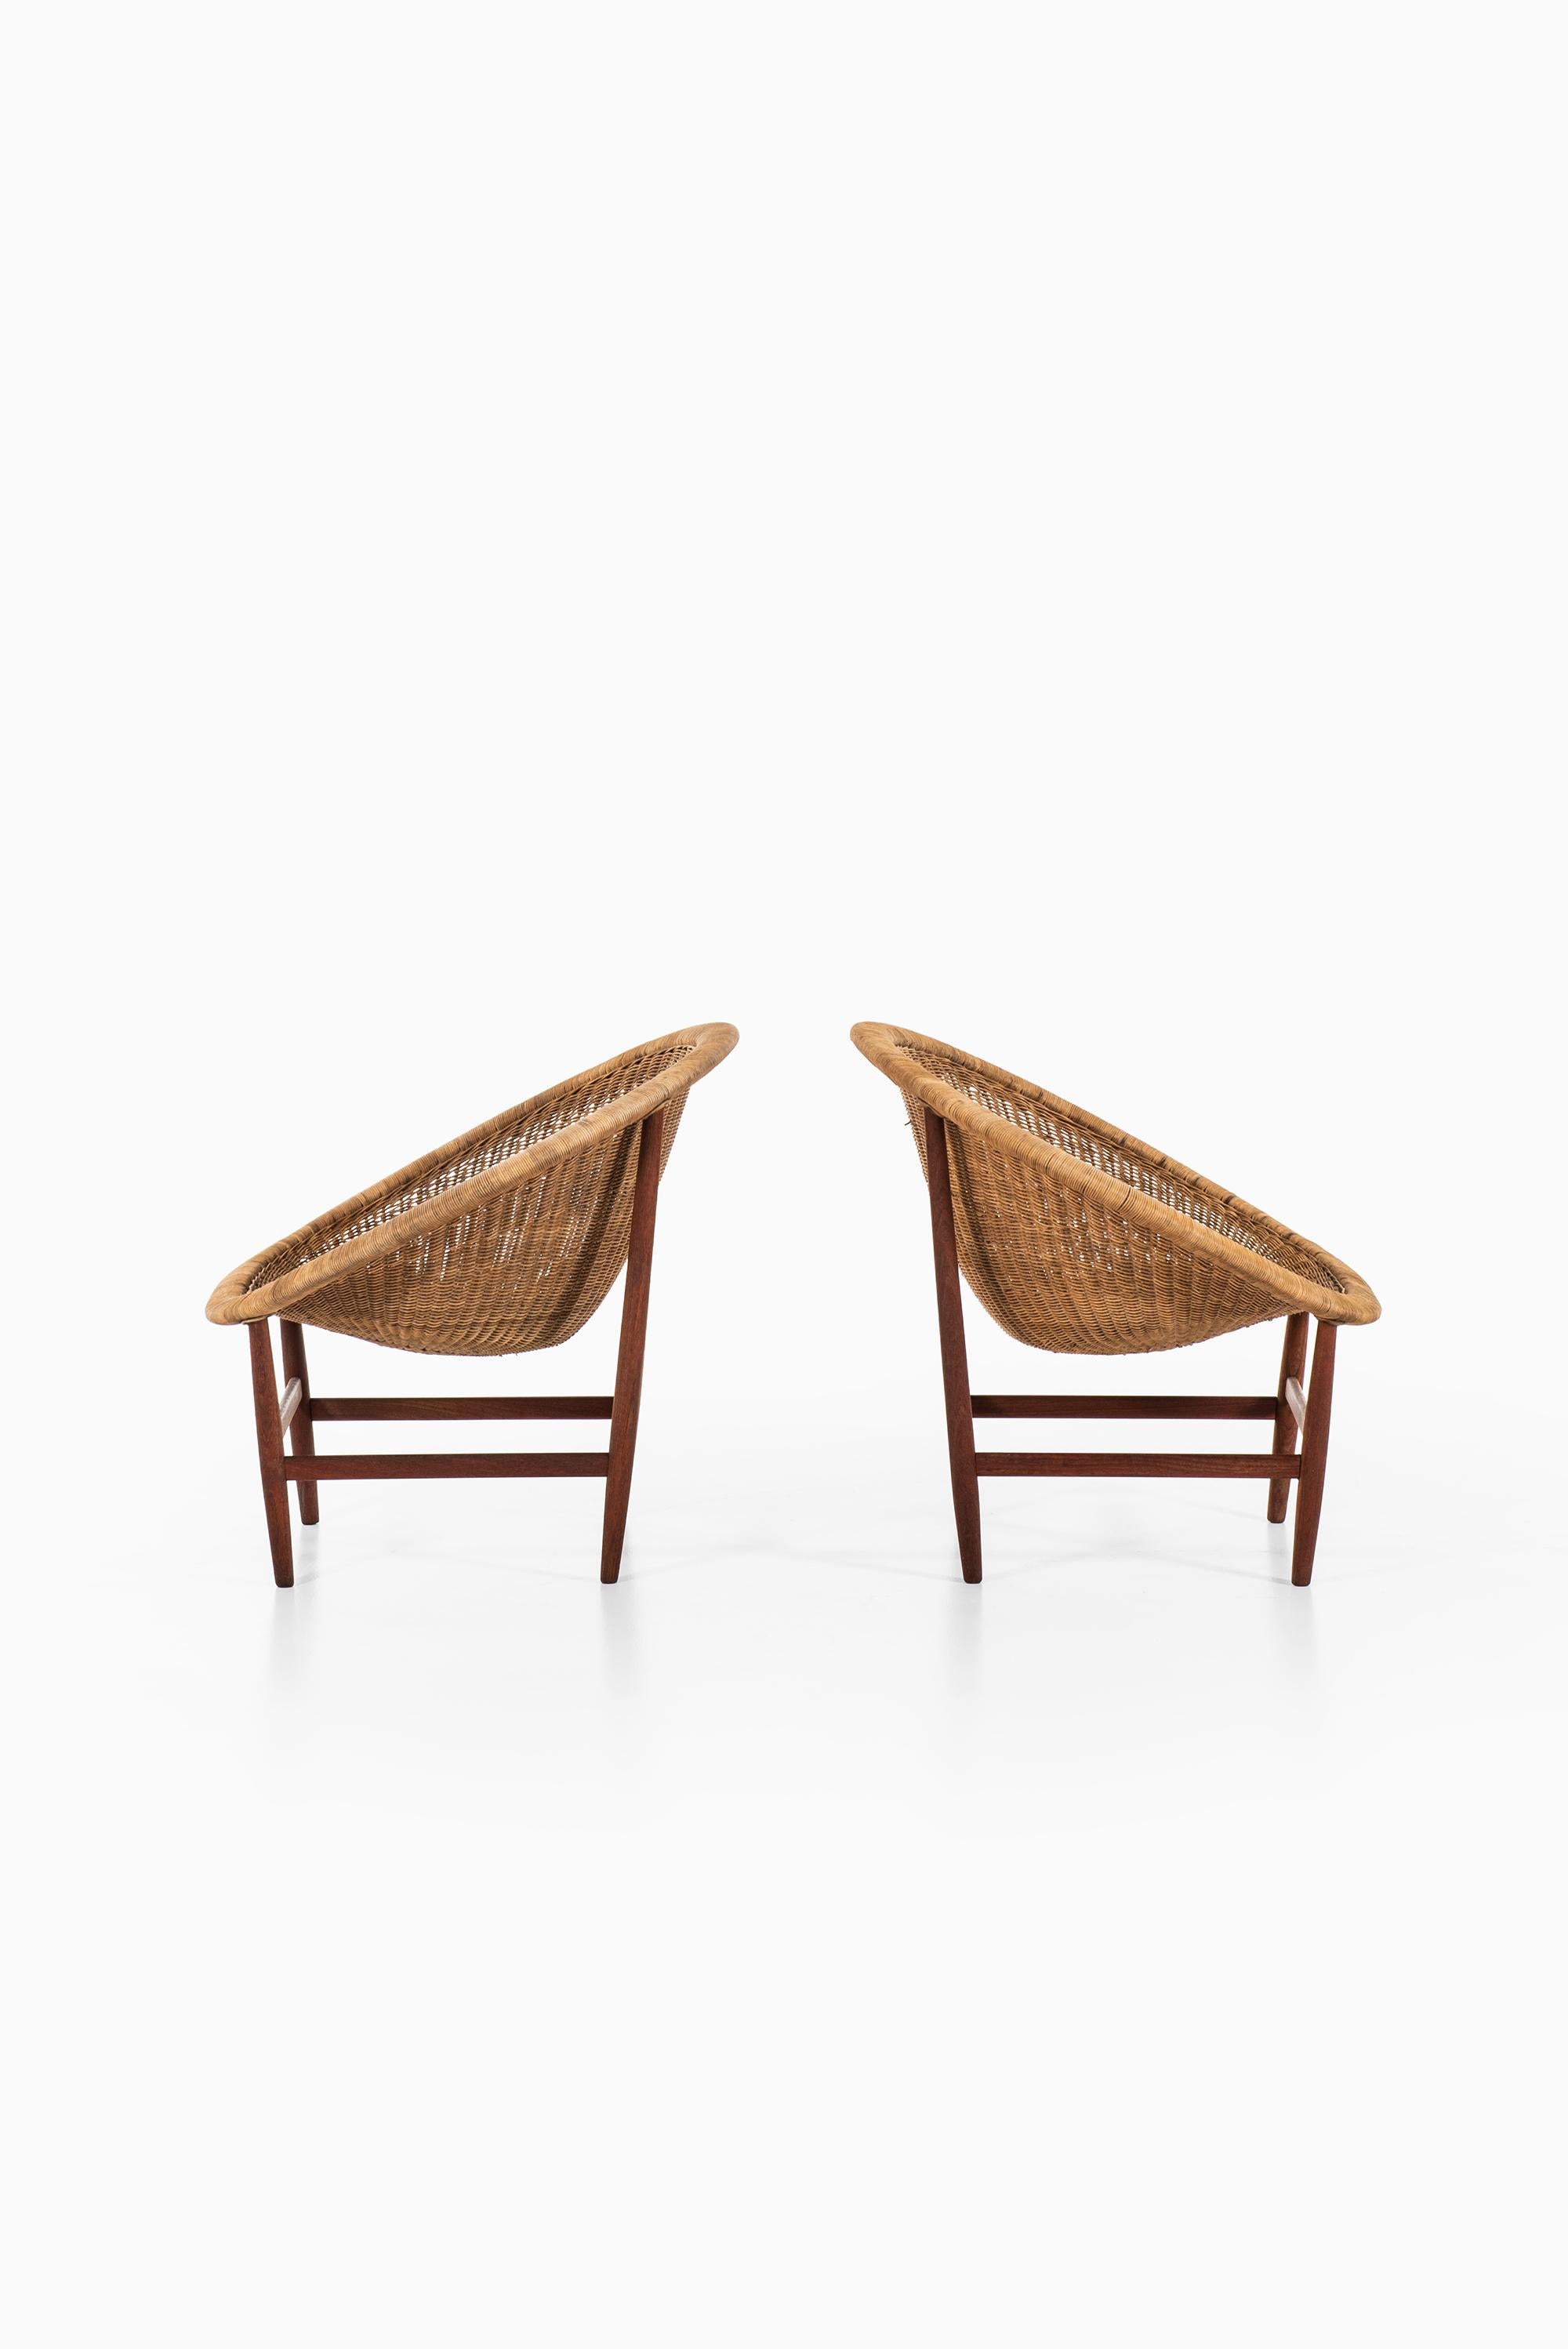 Danish Nanna & Jørgen Ditzel Easy Chairs by Ludvig Pontoppidan in Denmark